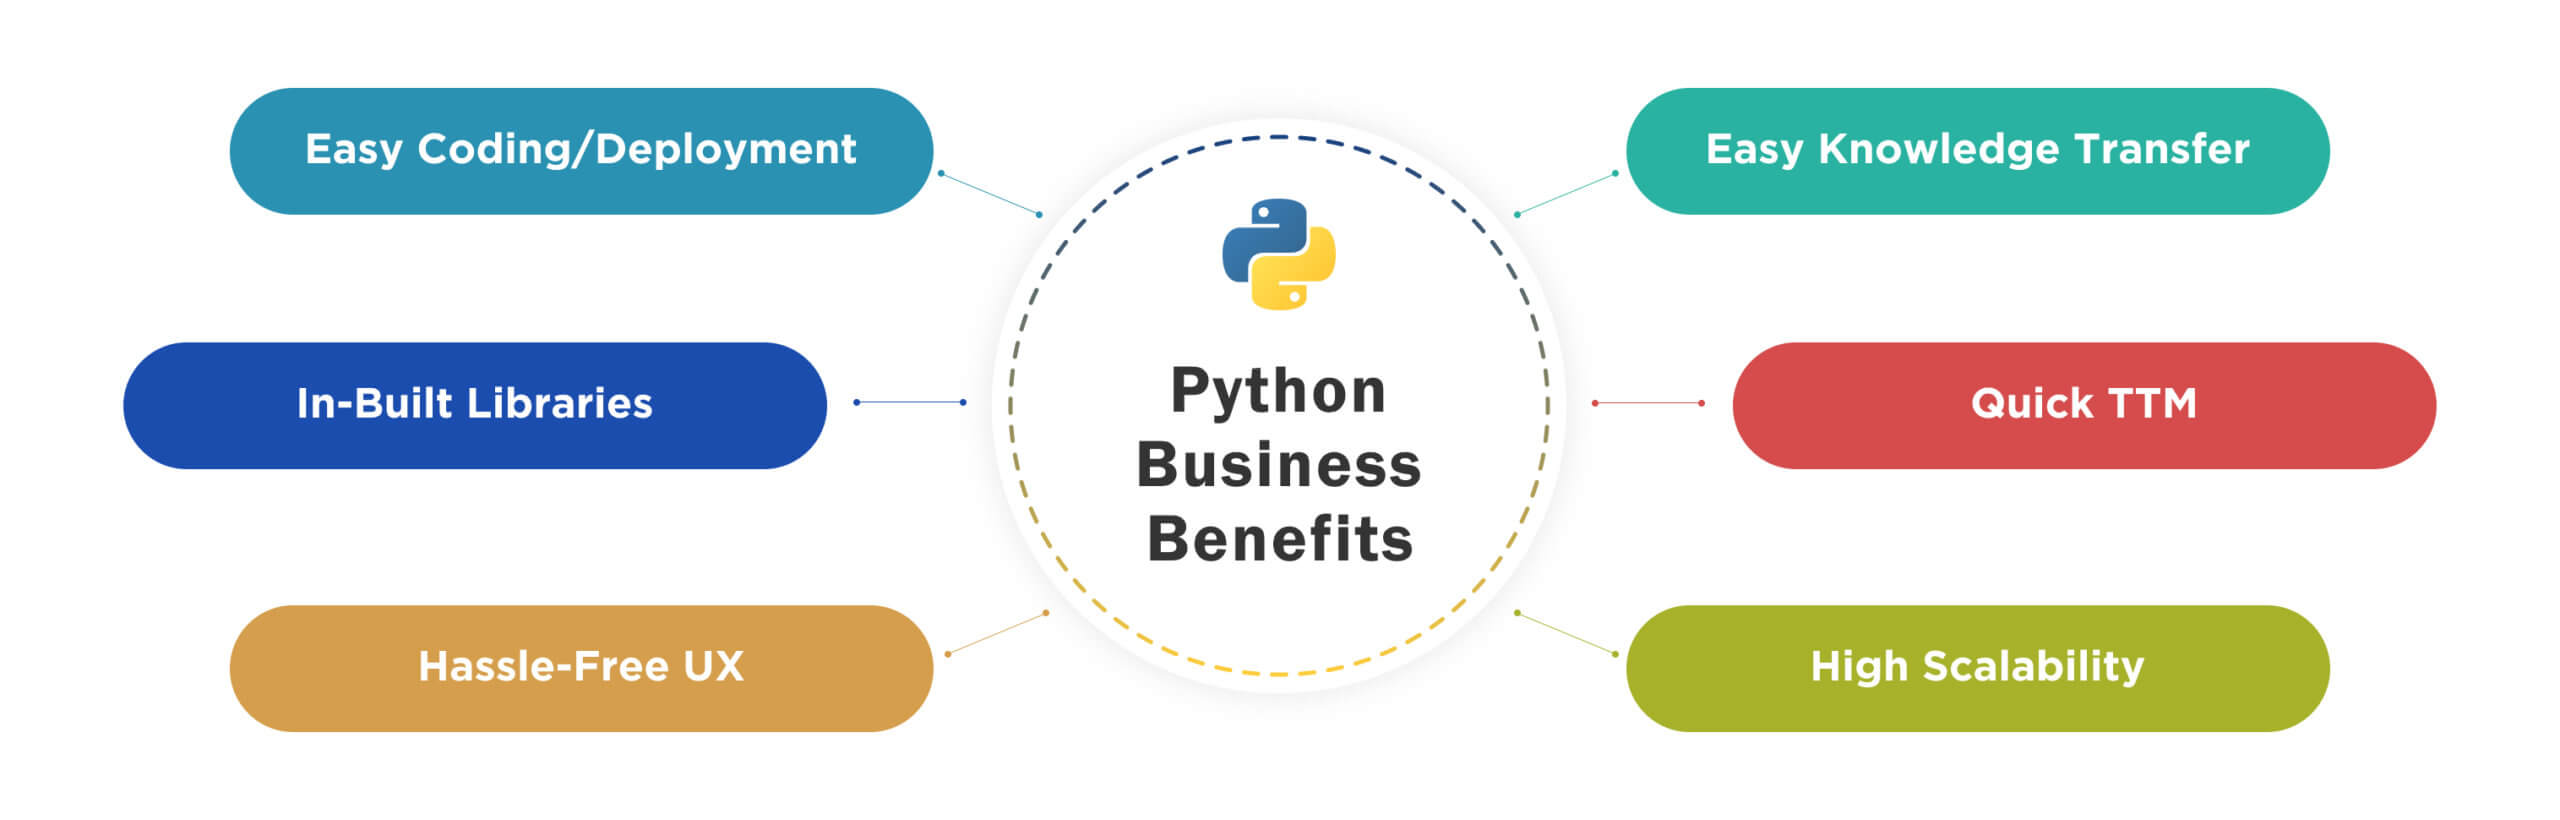 היתרונות העסקיים של Python